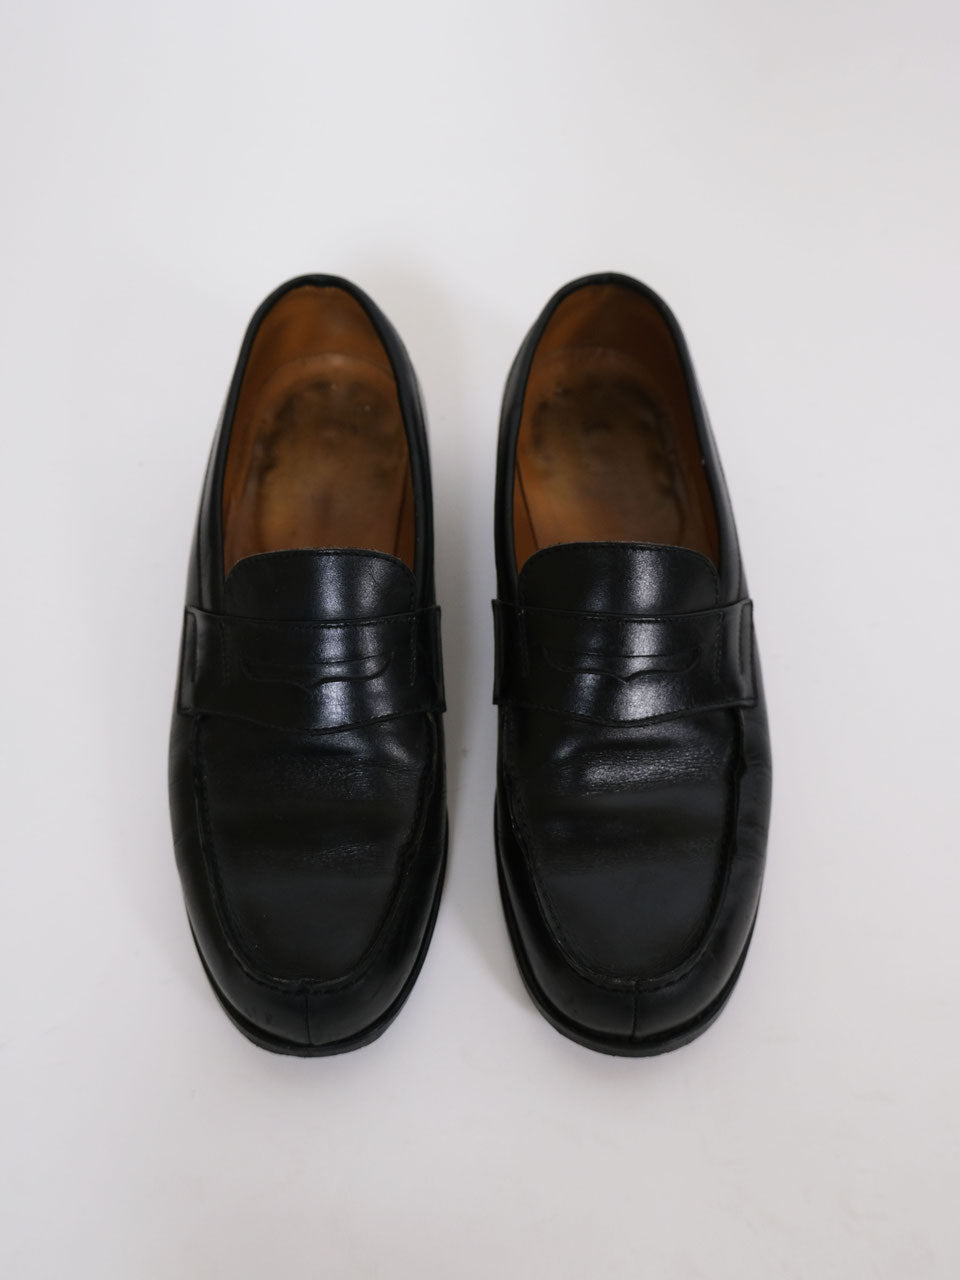 Leder Loafers Schuhe schwarz